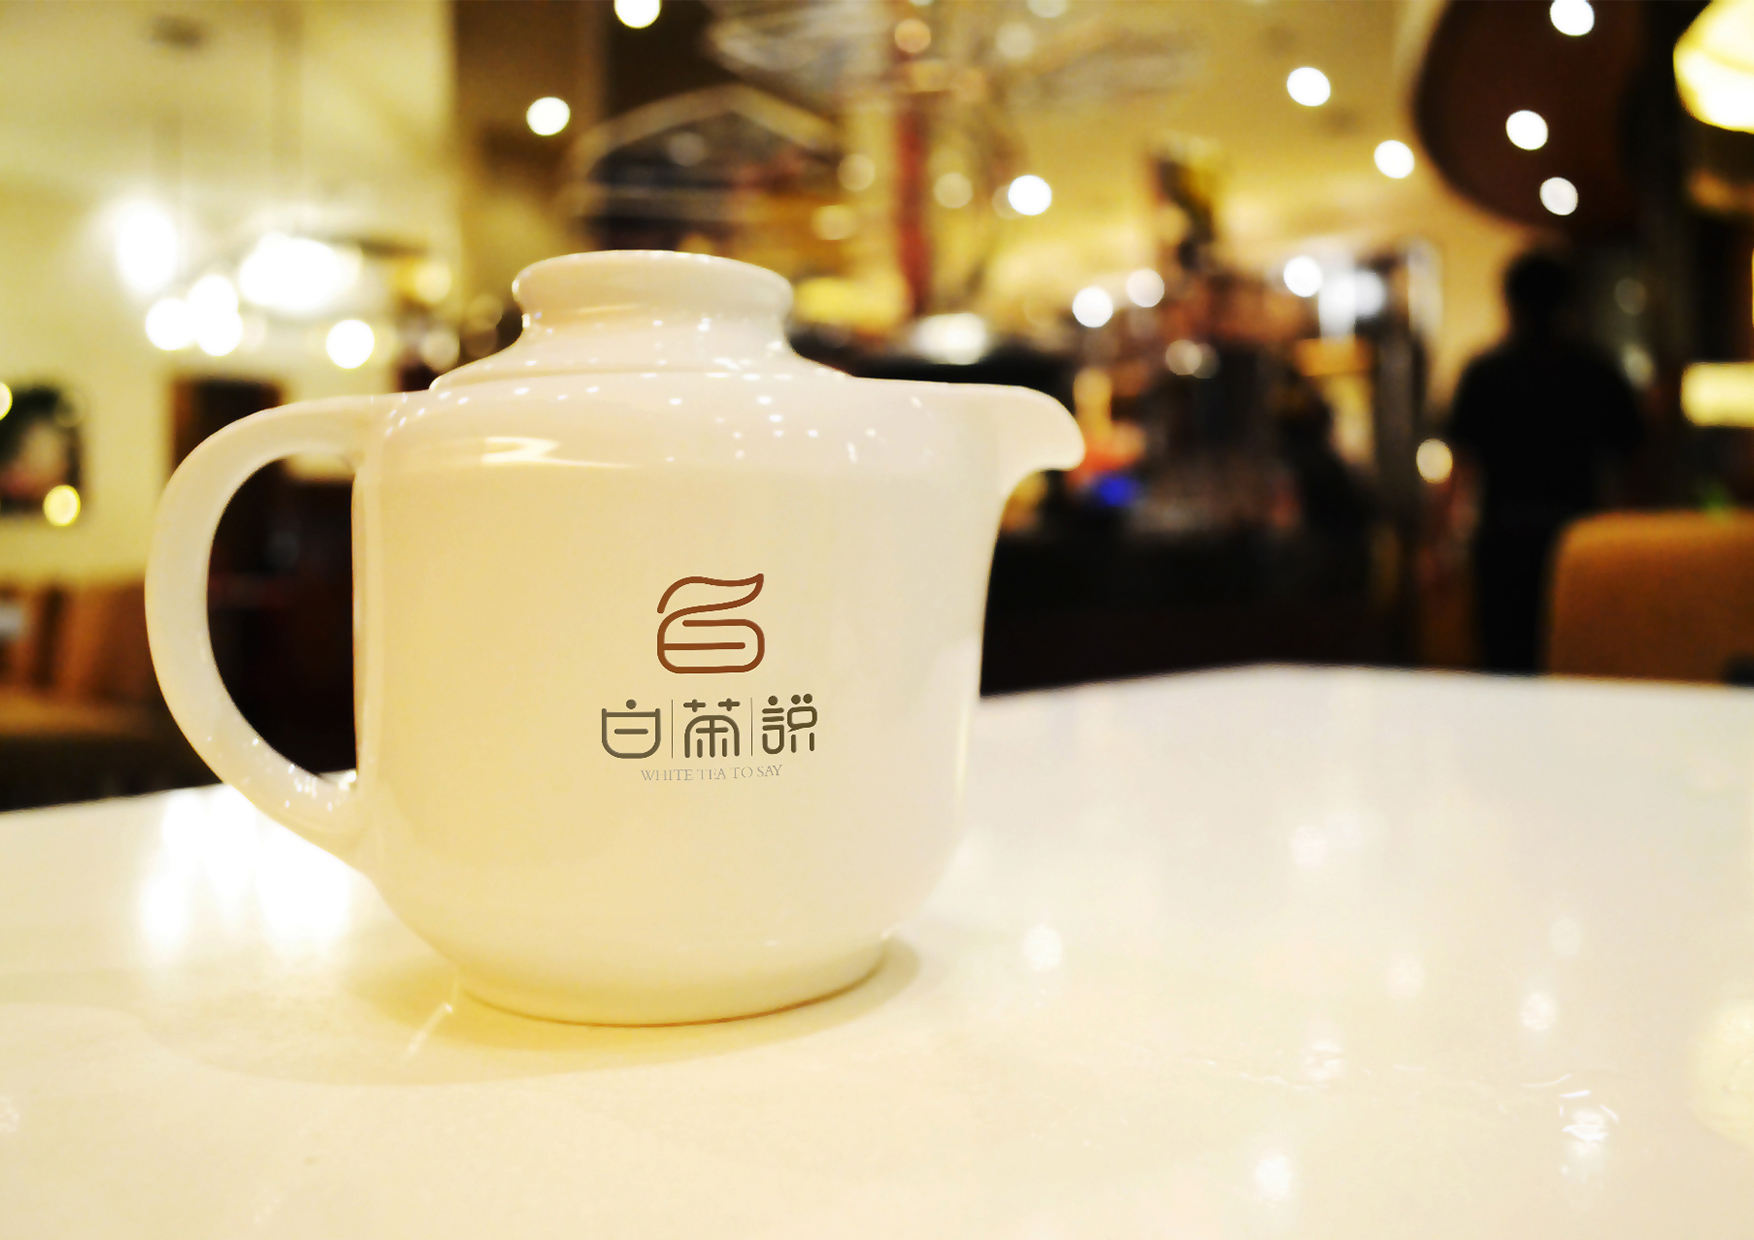 白茶说茶叶logo设计 飞特网 logo设计